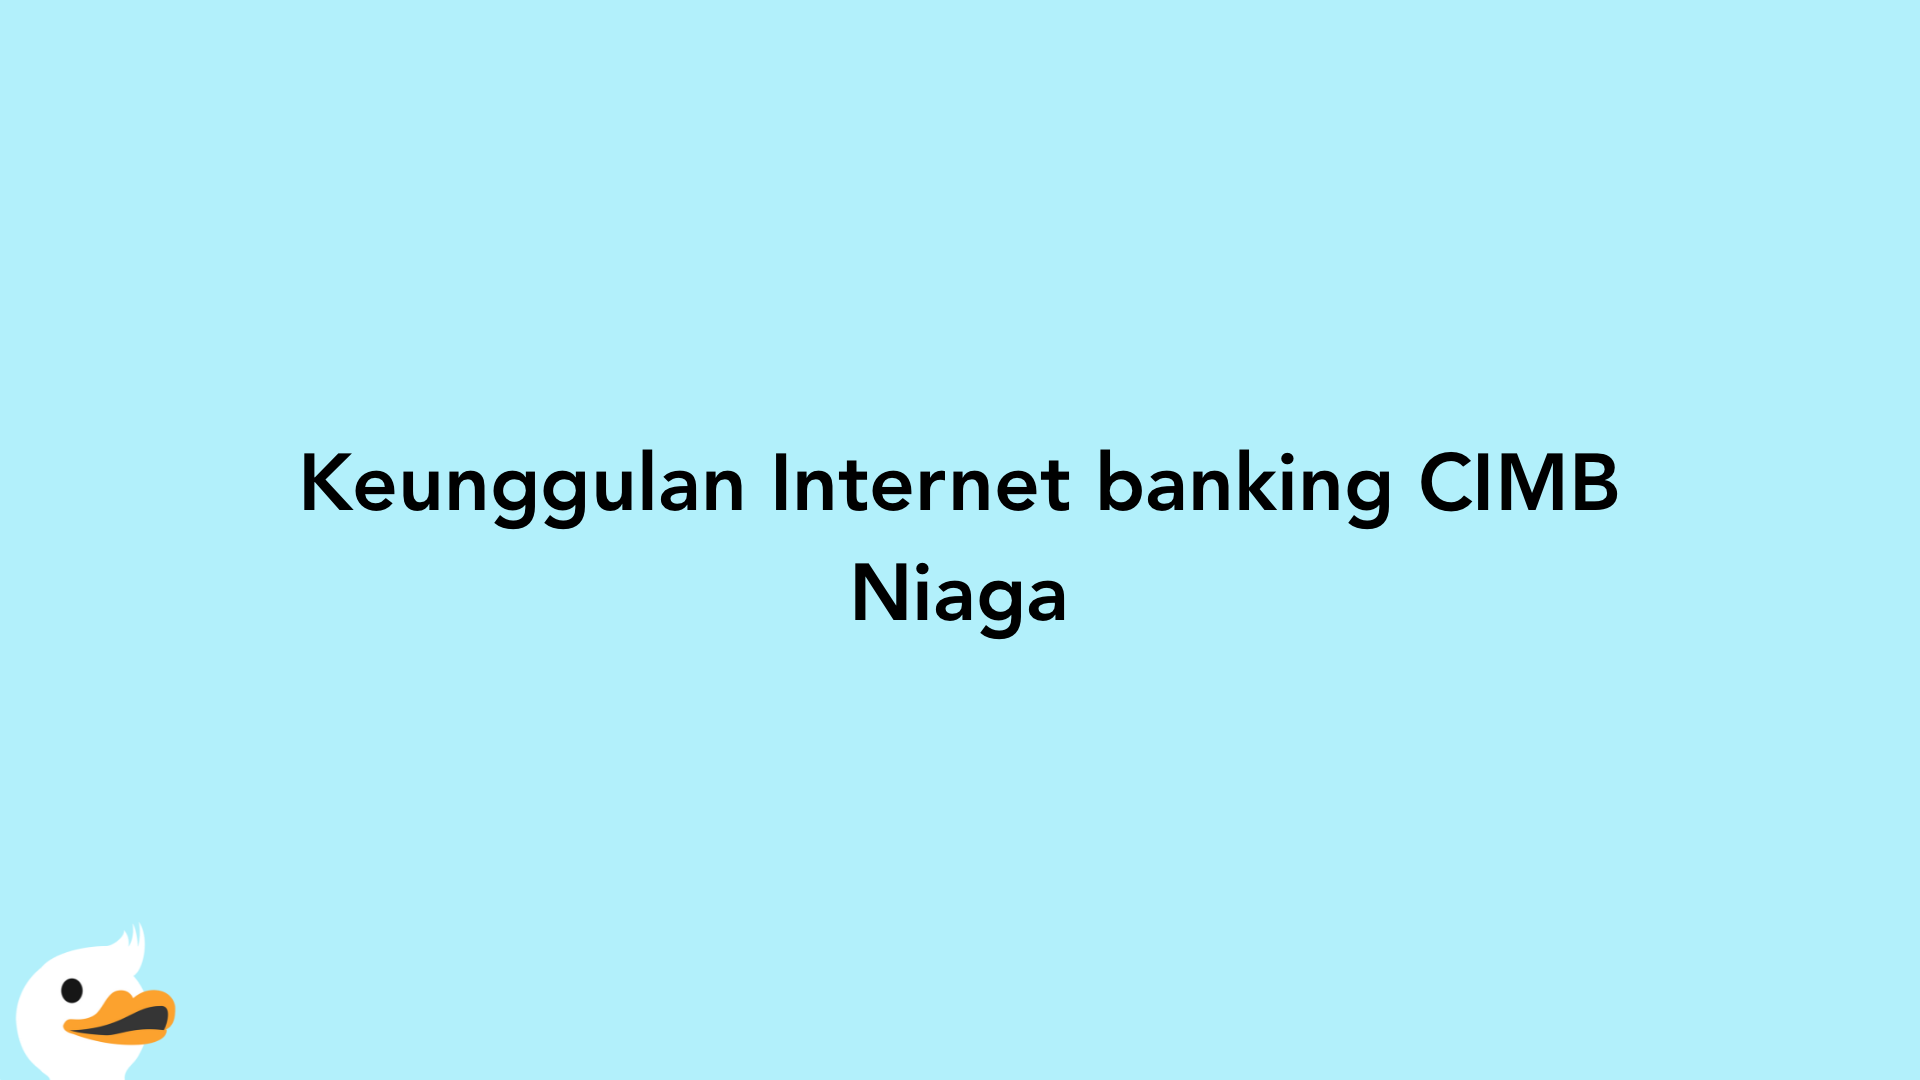 Keunggulan Internet banking CIMB Niaga